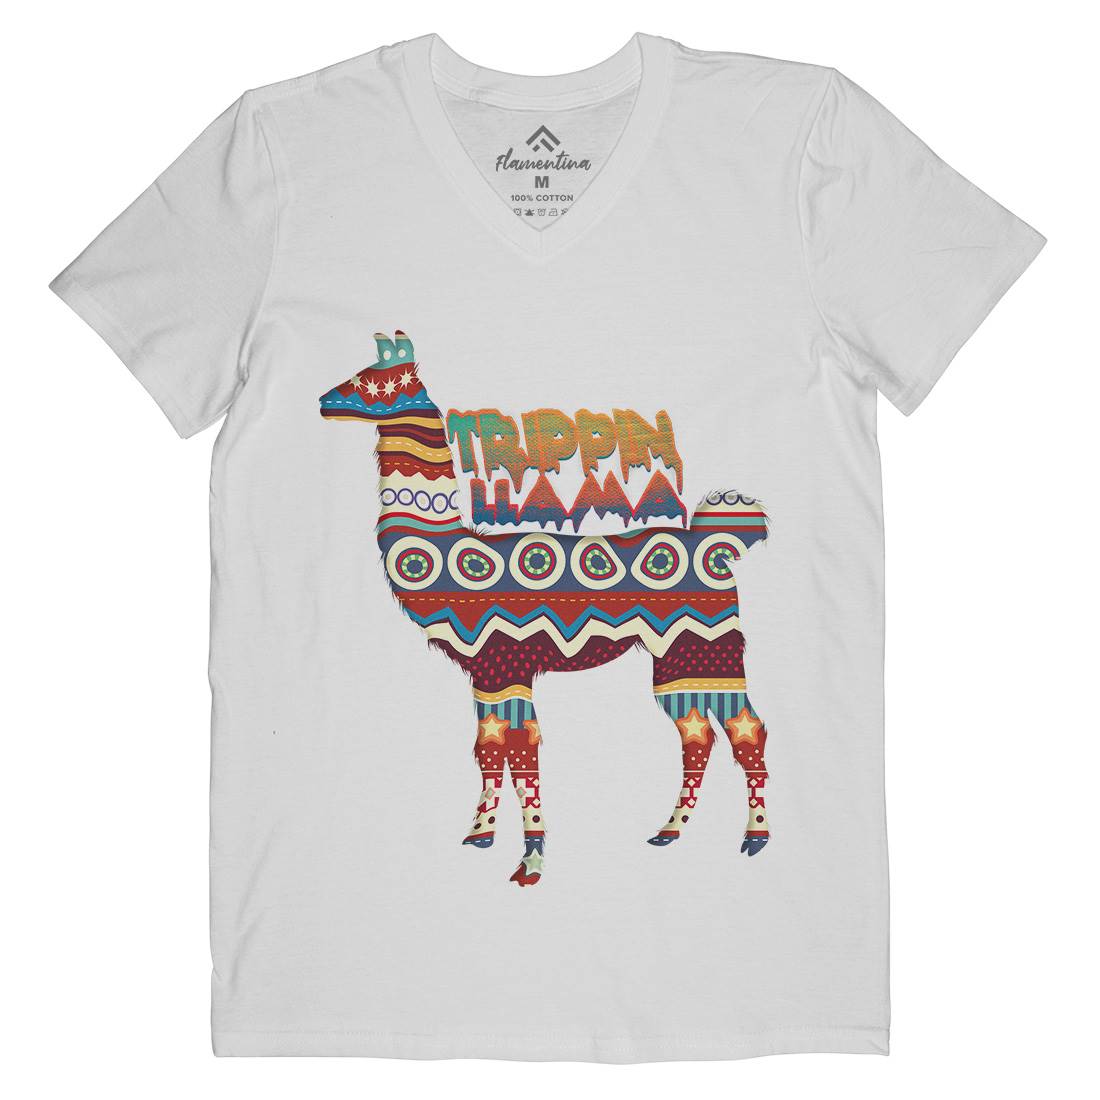 Trippin Llama Mens V-Neck T-Shirt Art A935